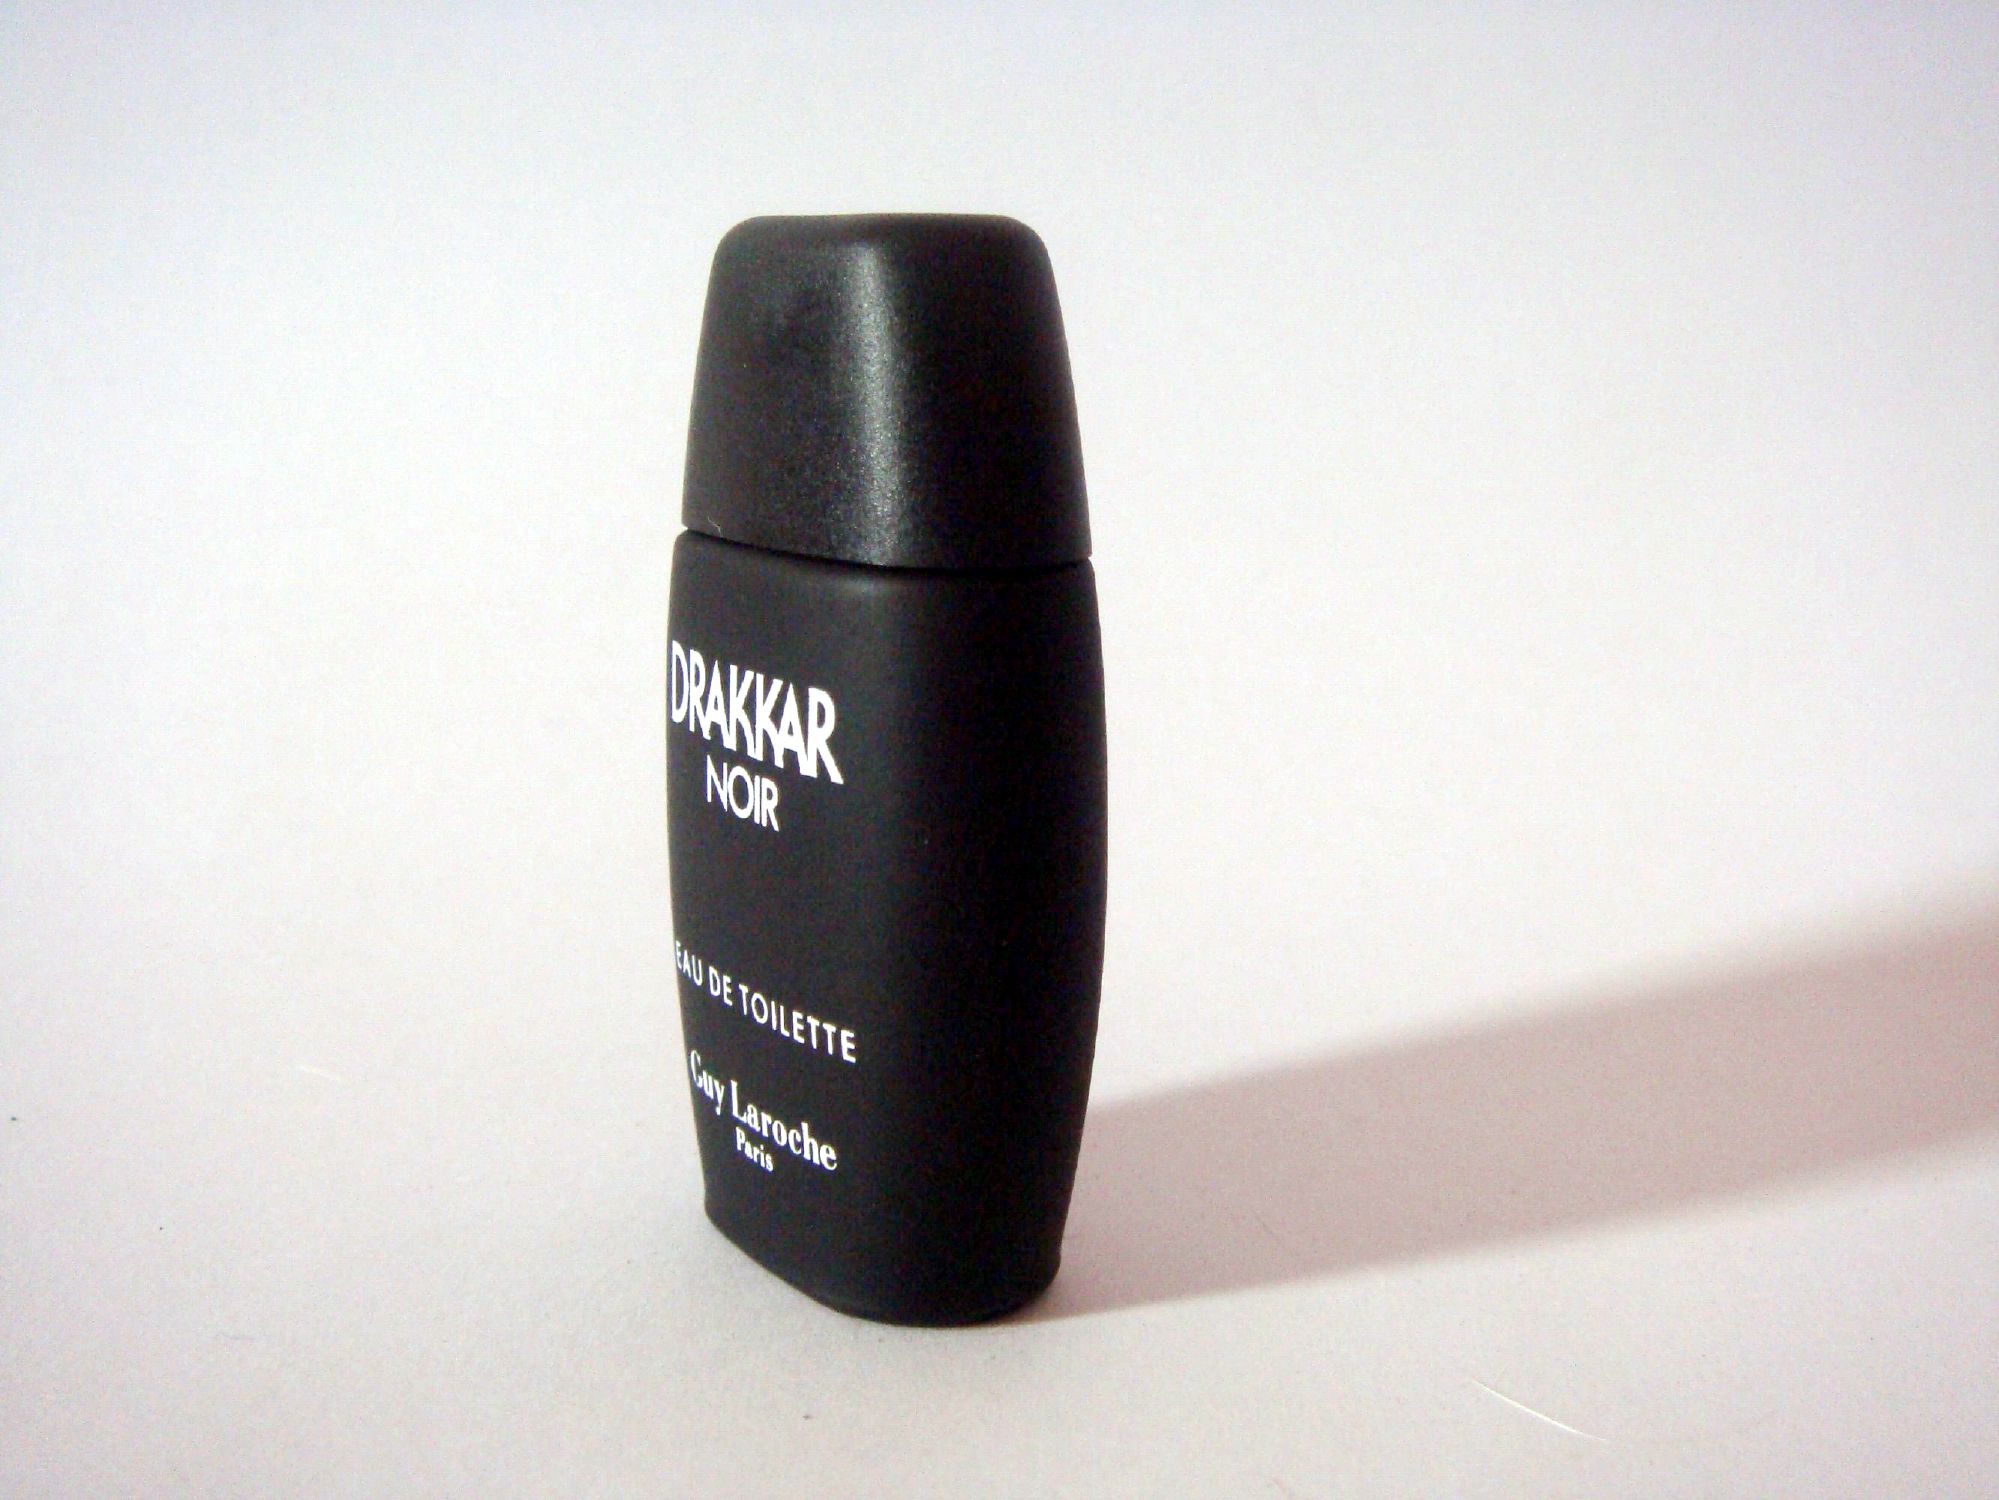 Drakkar noir perfume photo